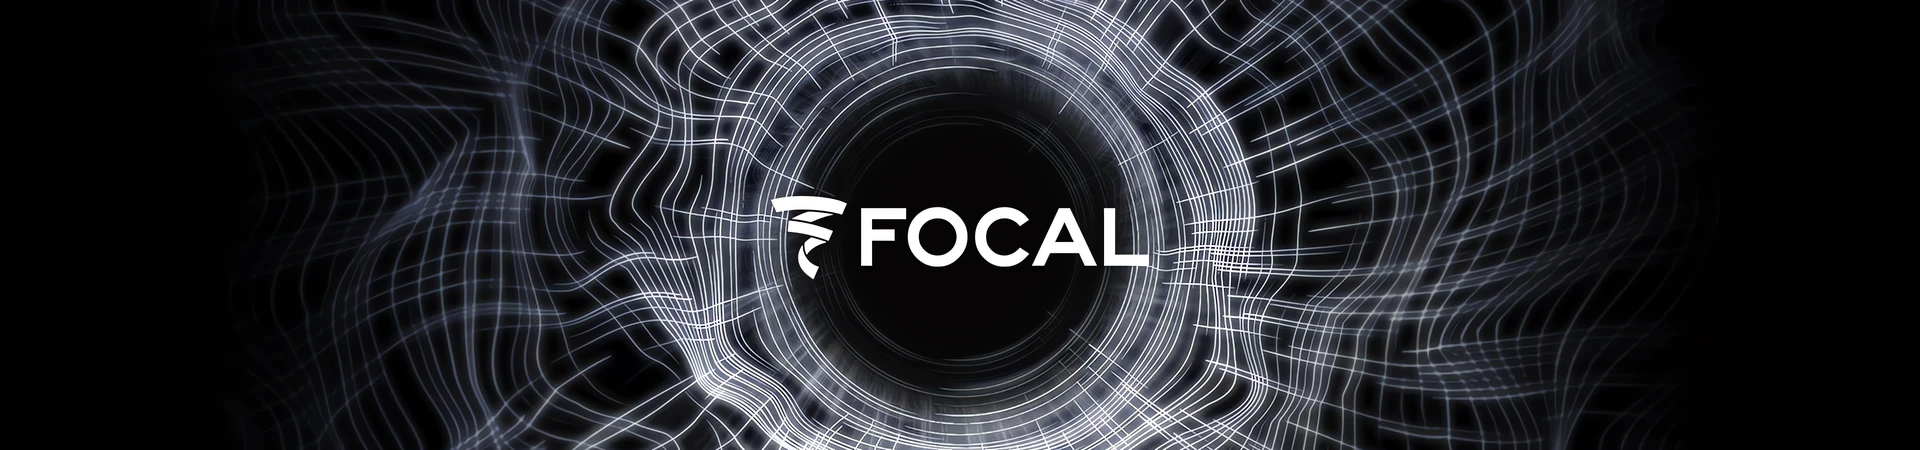 Focal Pro od teraz w dystrybucji Lauda Audio